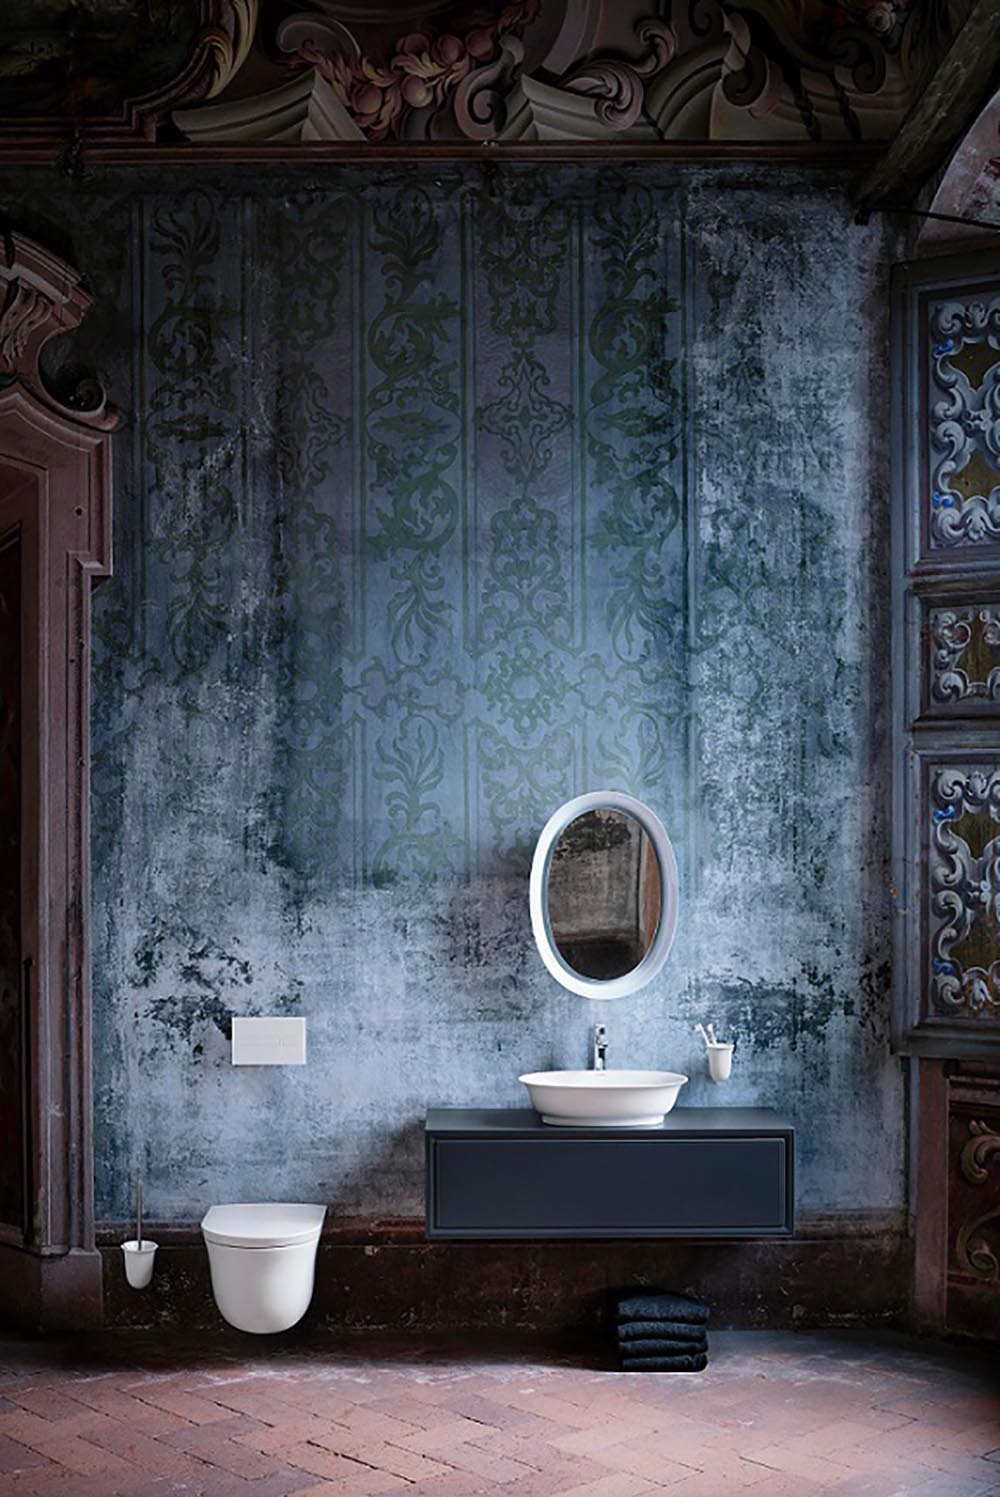 Łazienka w klasycznym stylu z elementami dawnej epoki